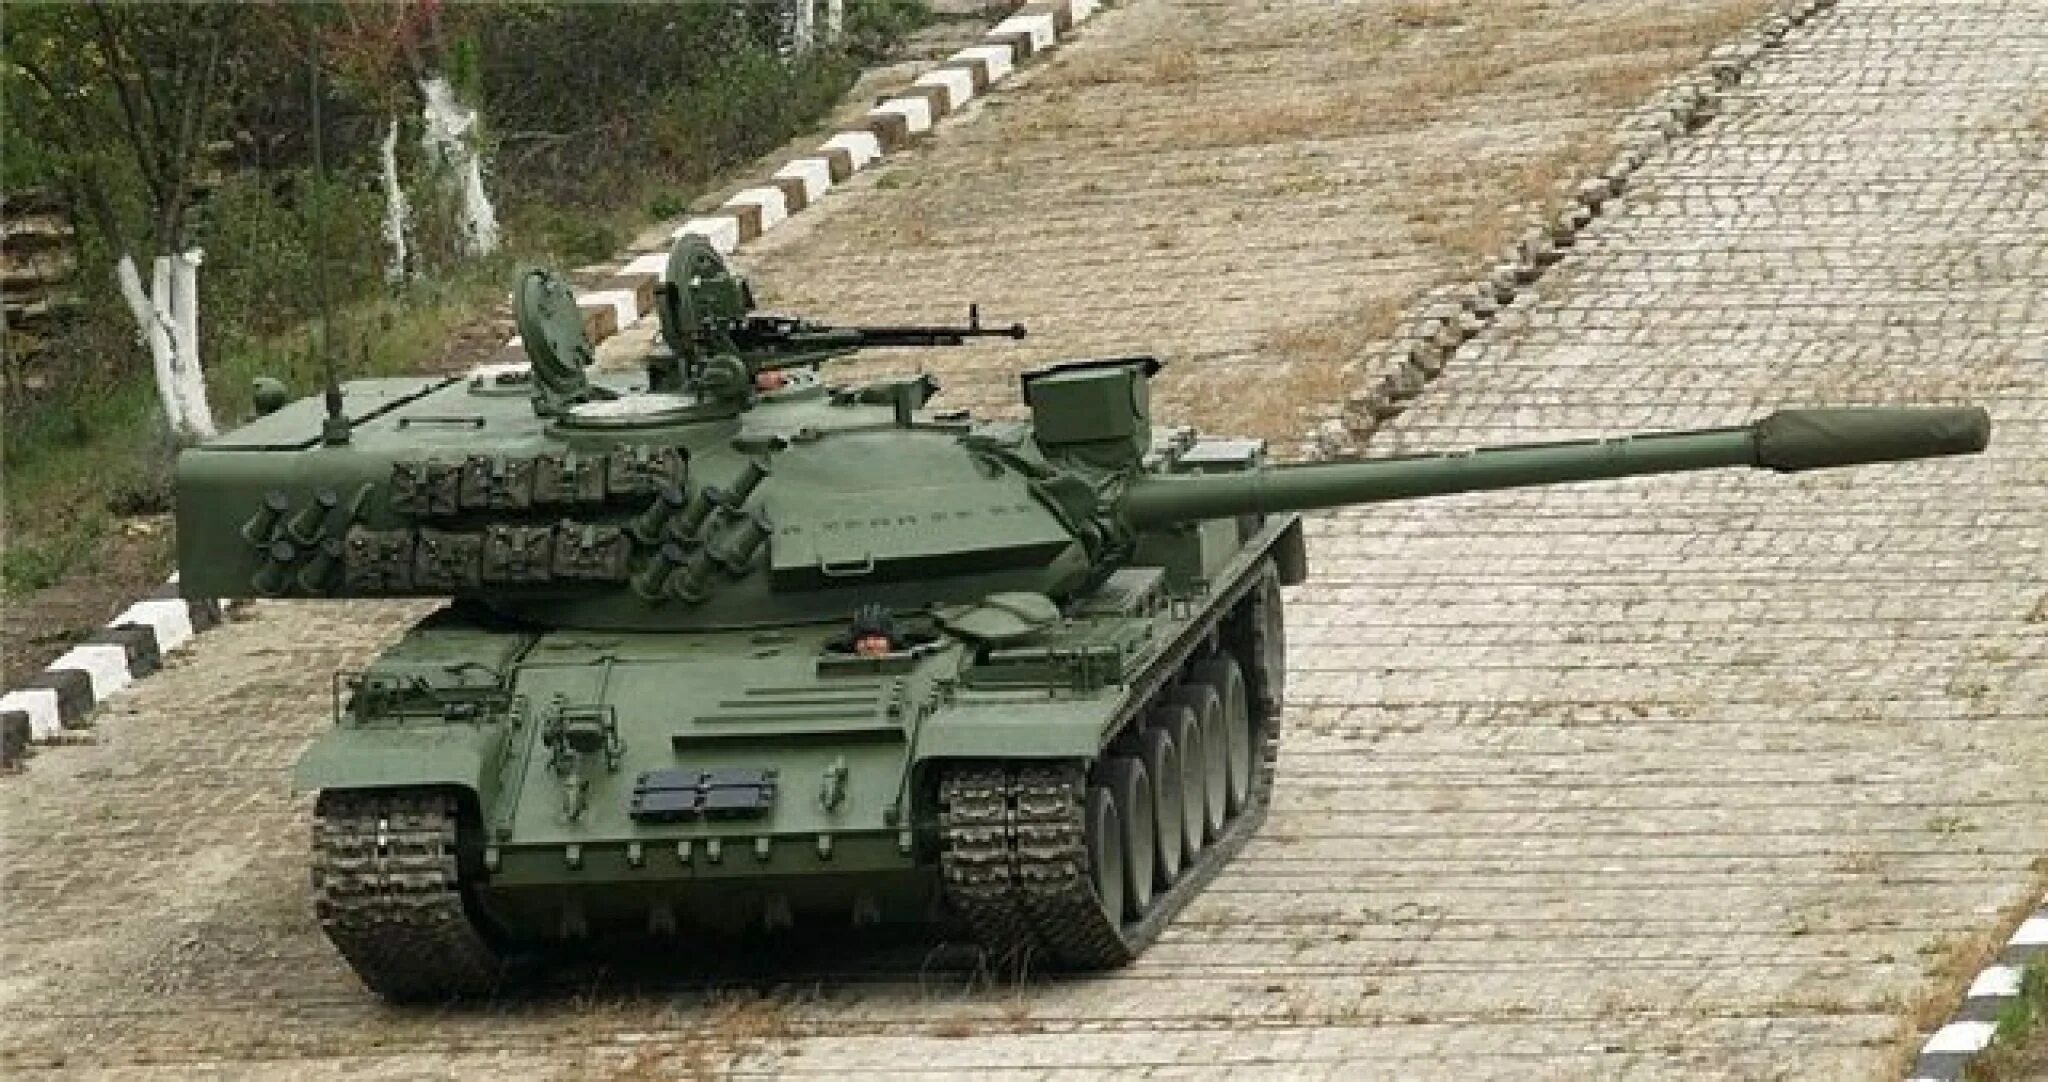 Танков m 55s. Tr-85m1 «Бизон». Тр-85 танк Румыния. Танк tr-85m1 Bizonul. Румынский танк tr-85m1 Бизон.